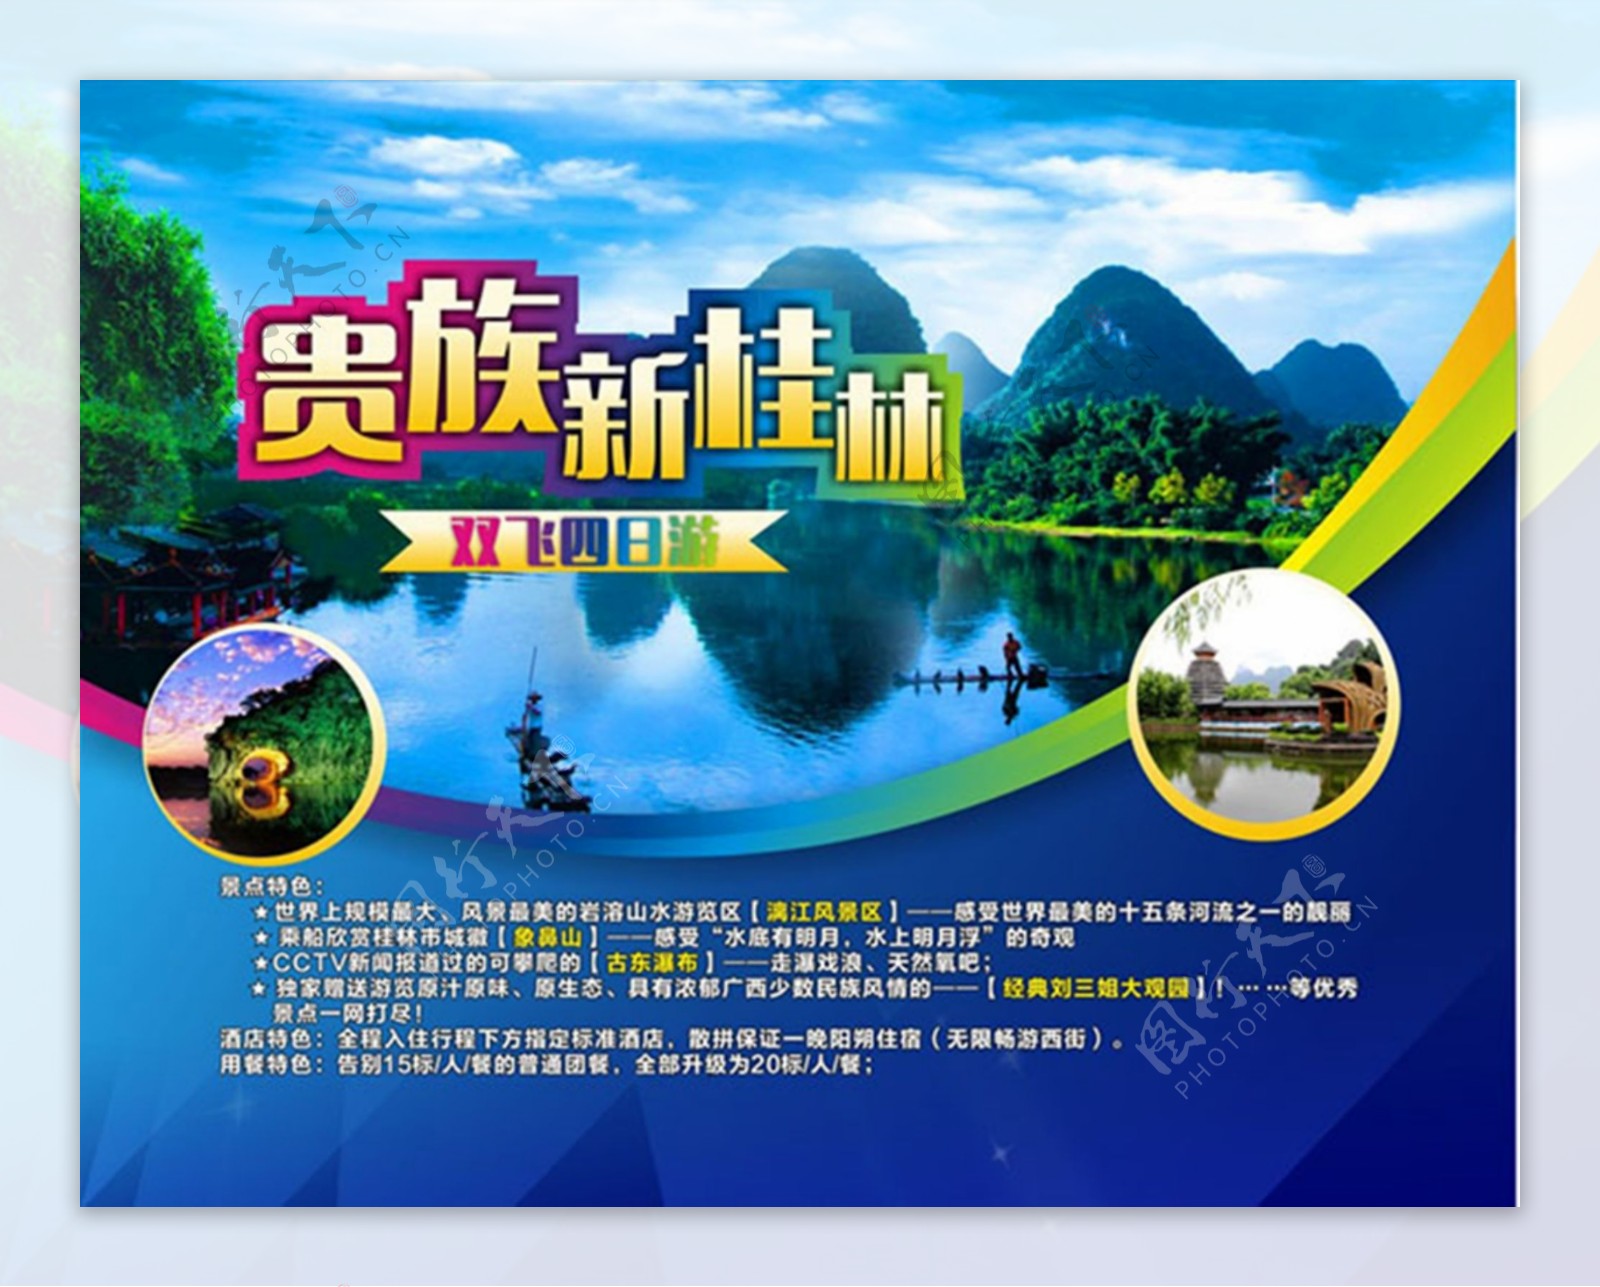 贵族新桂林双飞四日游旅游宣传海报设计